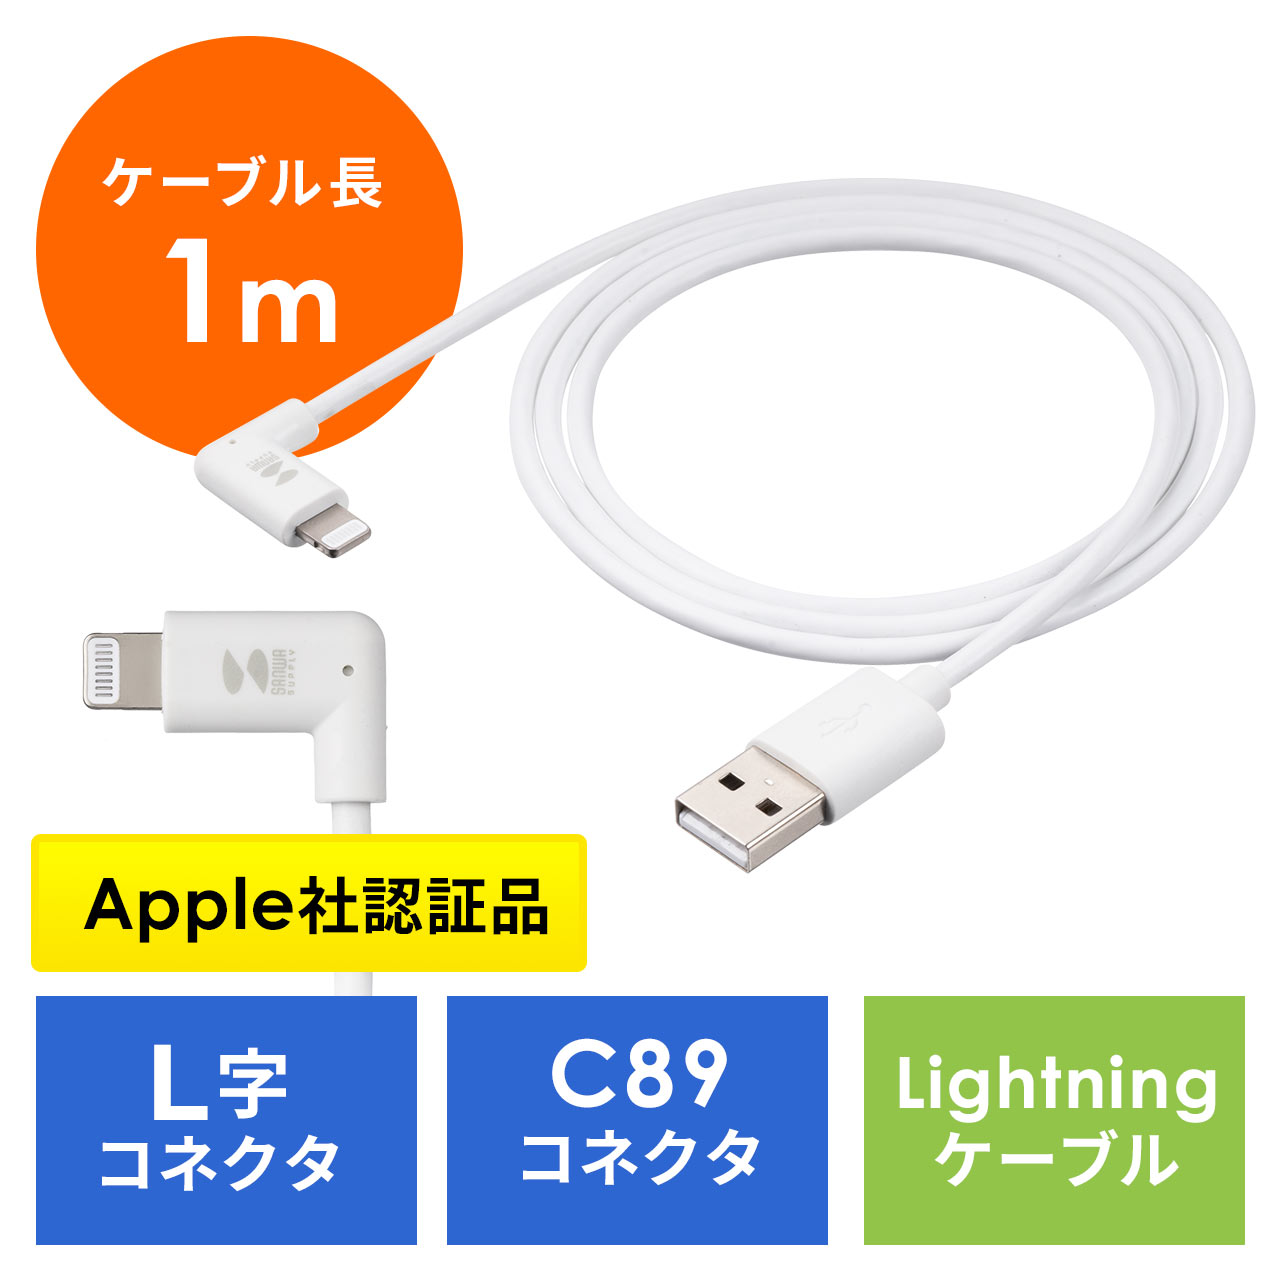 ライトニングケーブル L字型 MFi認証品 充電 データ転送 C89コネクタ規格 長さ 1m iPhone iPad AirPods ホワイト  500-IPLM029Wの販売商品 | 通販ならサンワダイレクト